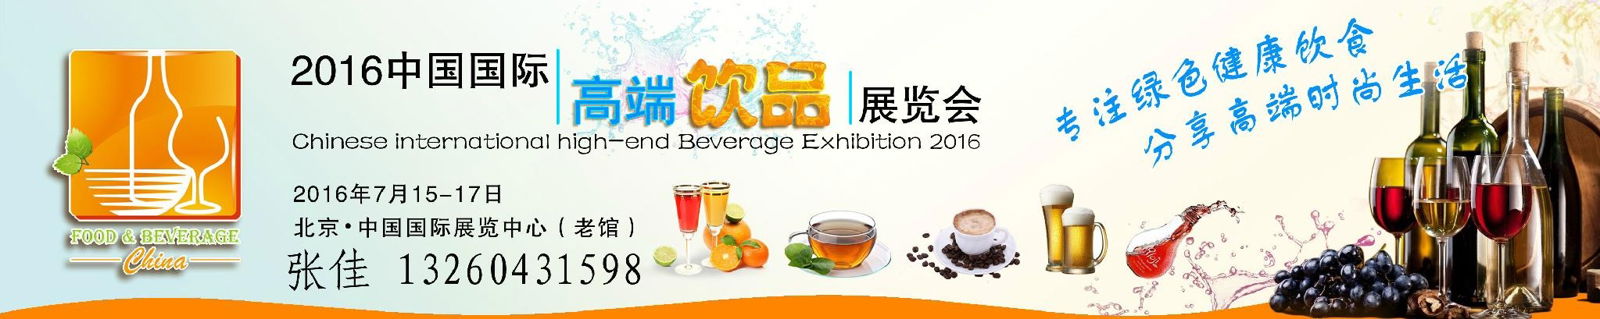  2016北京高端饮品展览会